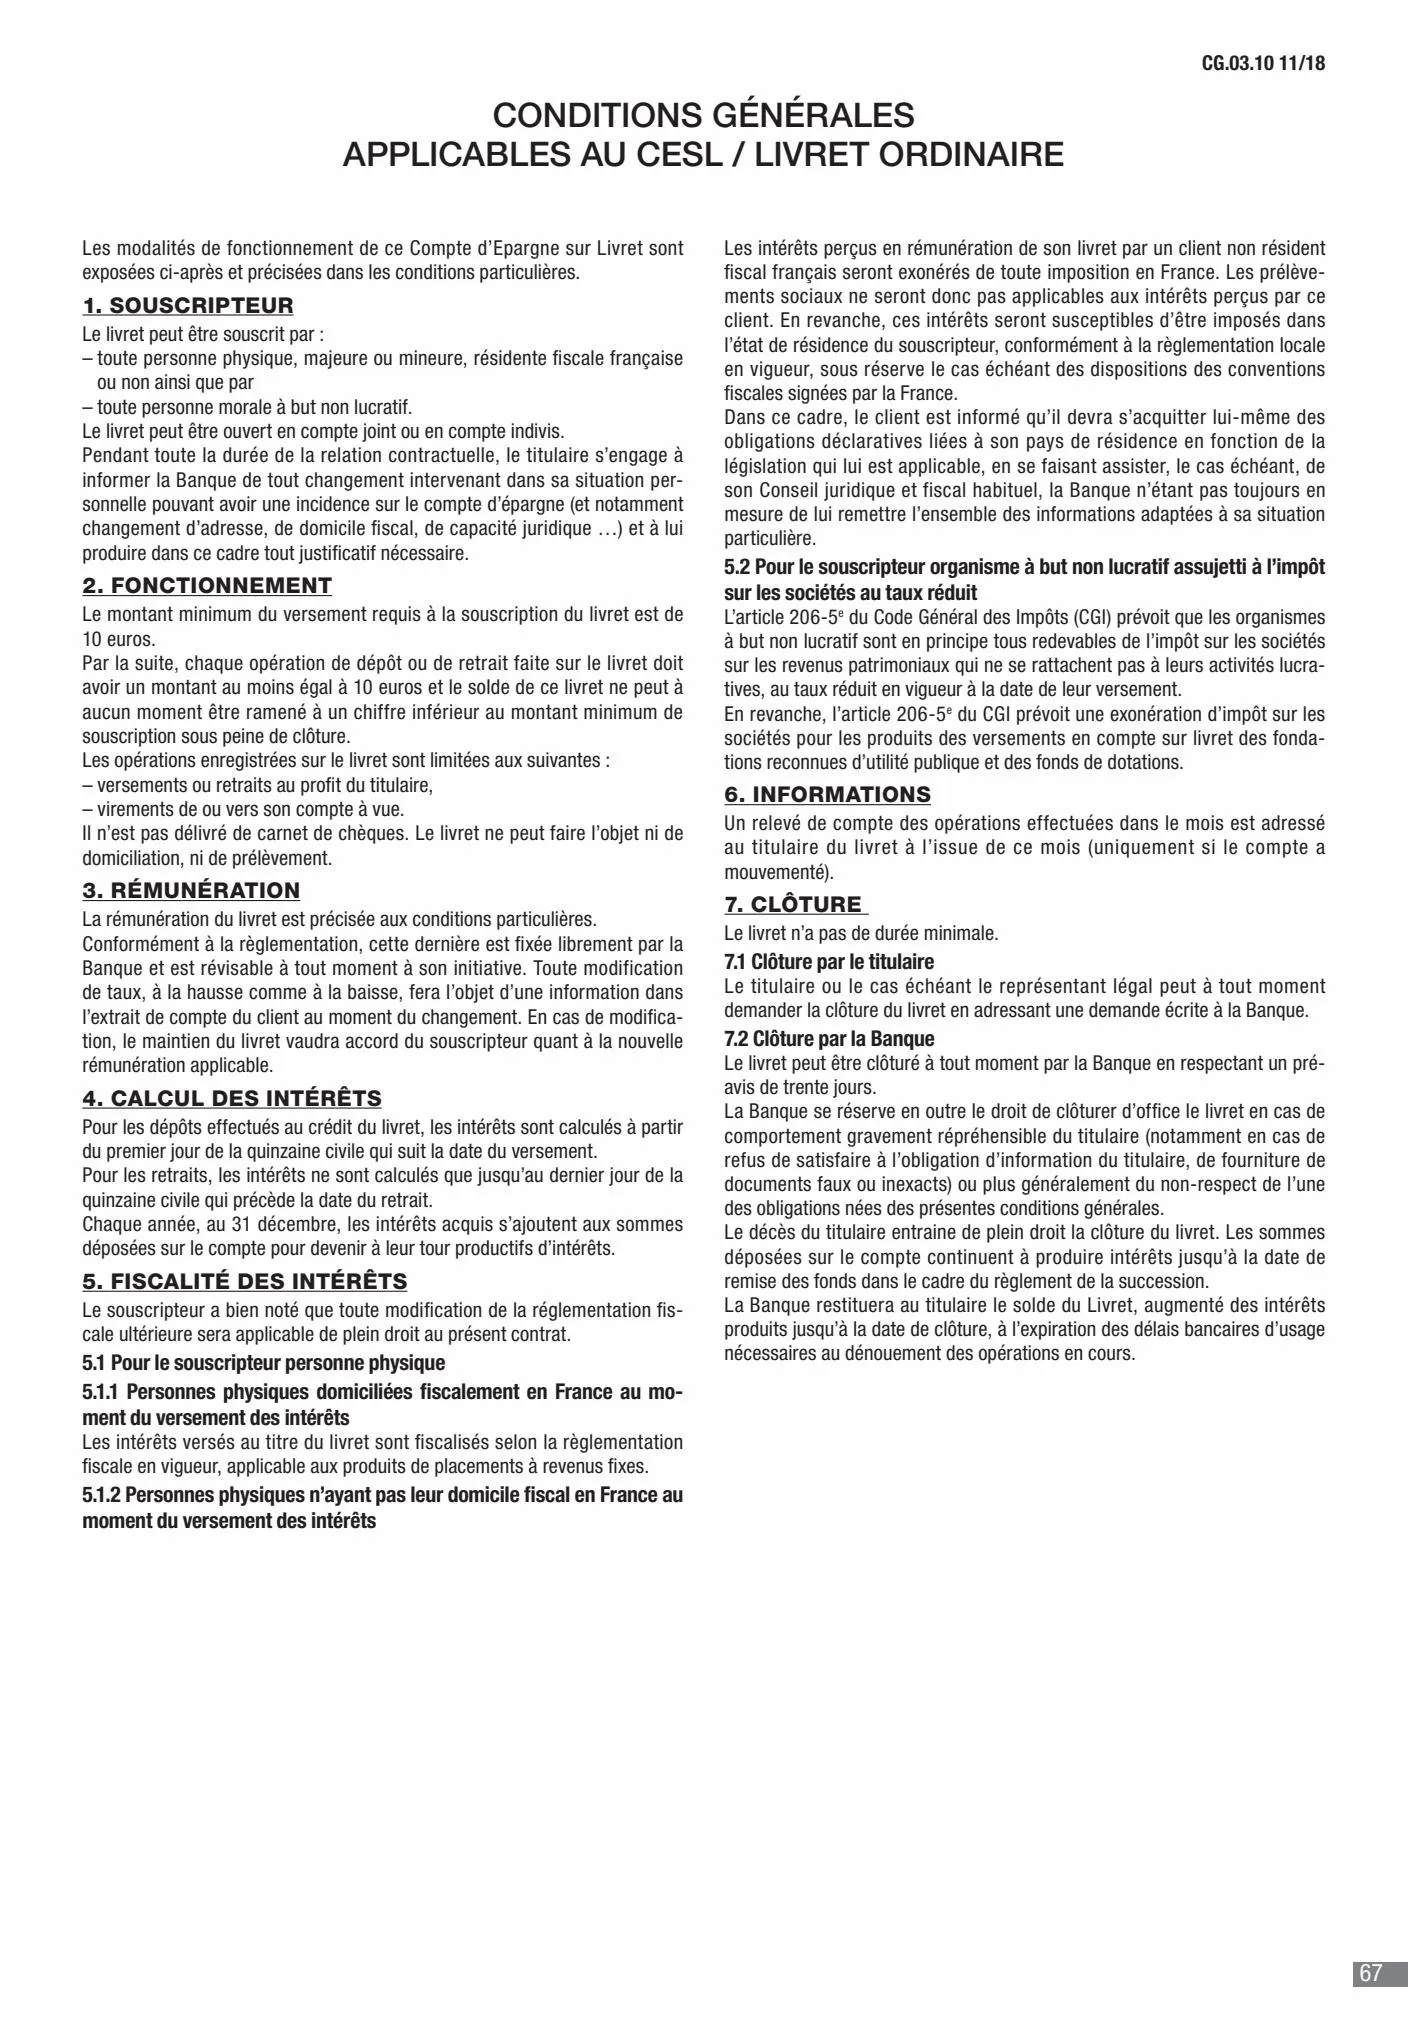 Catalogue CIC Conditions générales Professionels, page 00069